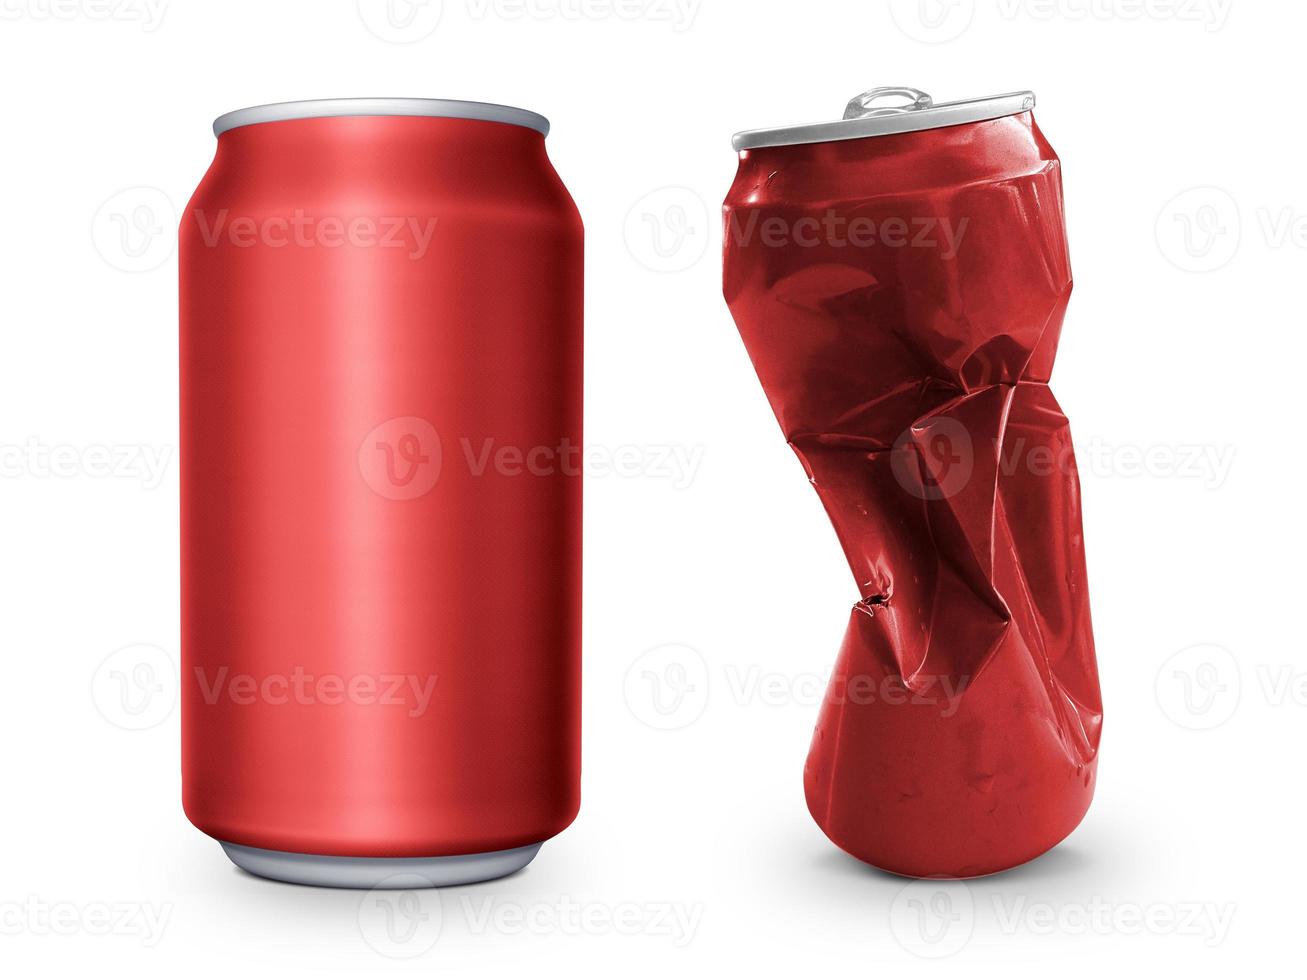 gaseosas en blanco vacías arrugadas y basura de latas de cerveza, latas de chatarra trituradas pueden reciclarse aisladas en fondo blanco foto